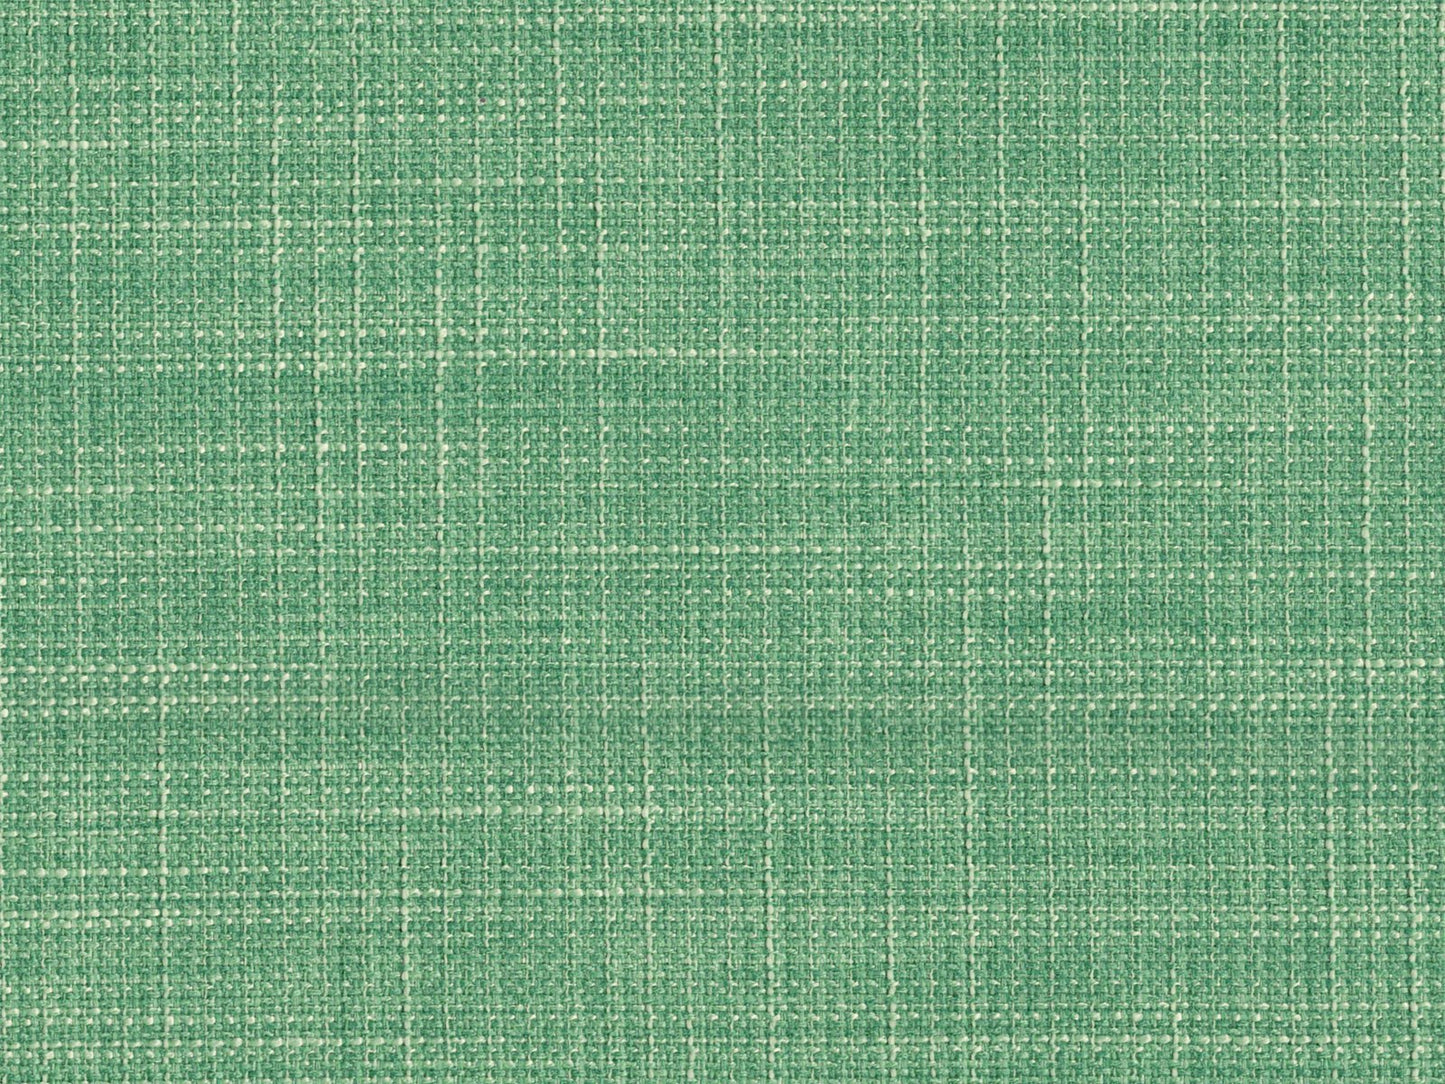 Emporio Fabric Samples - Rydan Interiors